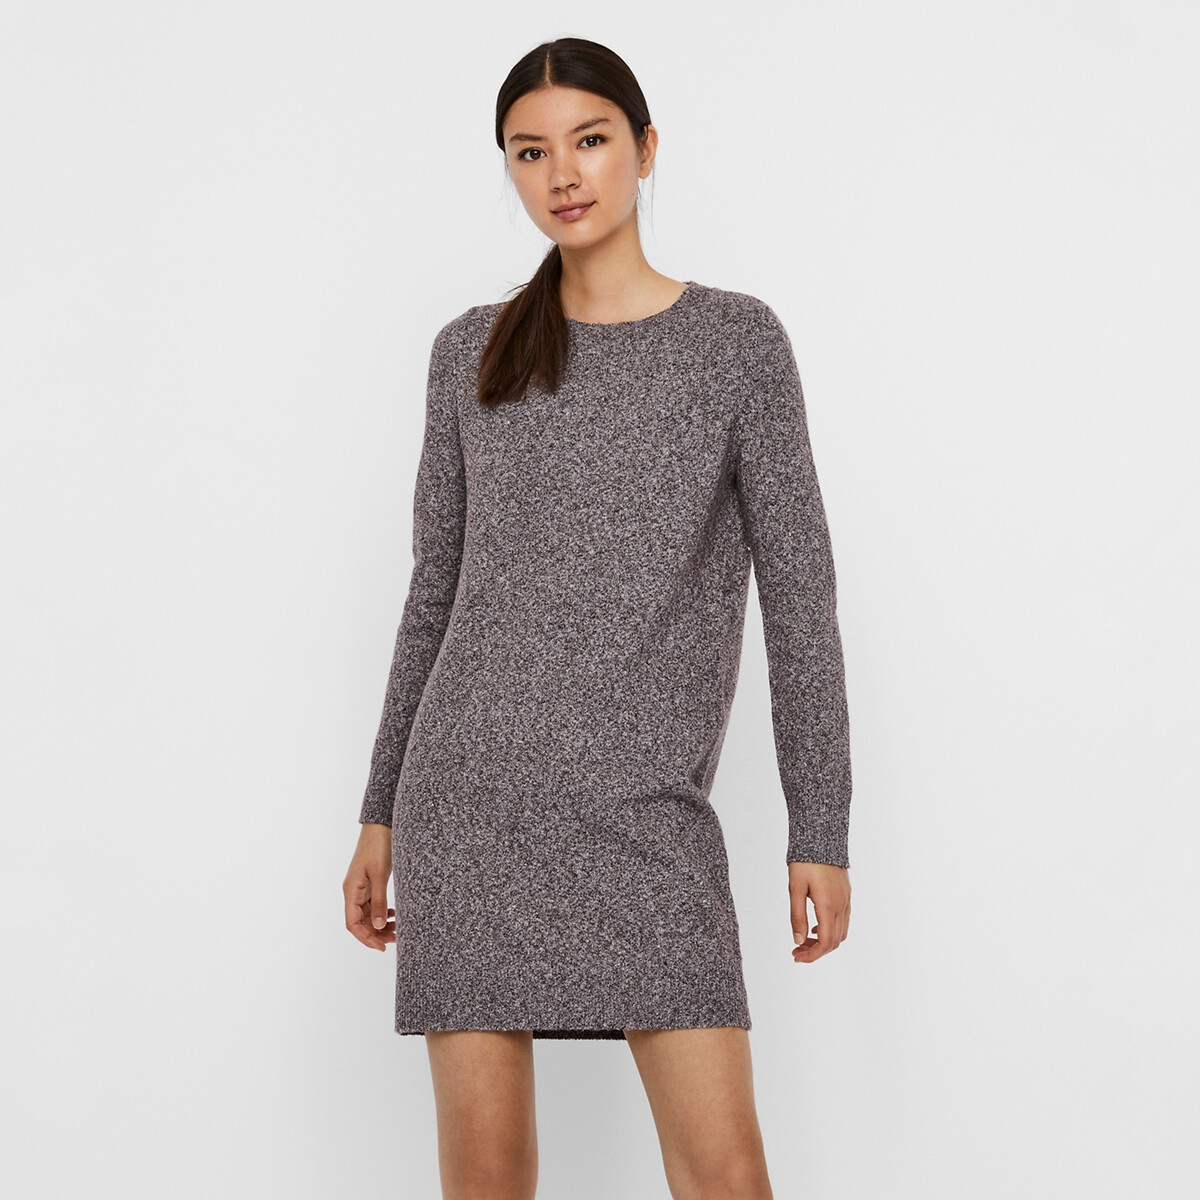 Платье-пуловер La Redoute Короткое круглый вырез прямой покрой M каштановый, размер M - фото 5